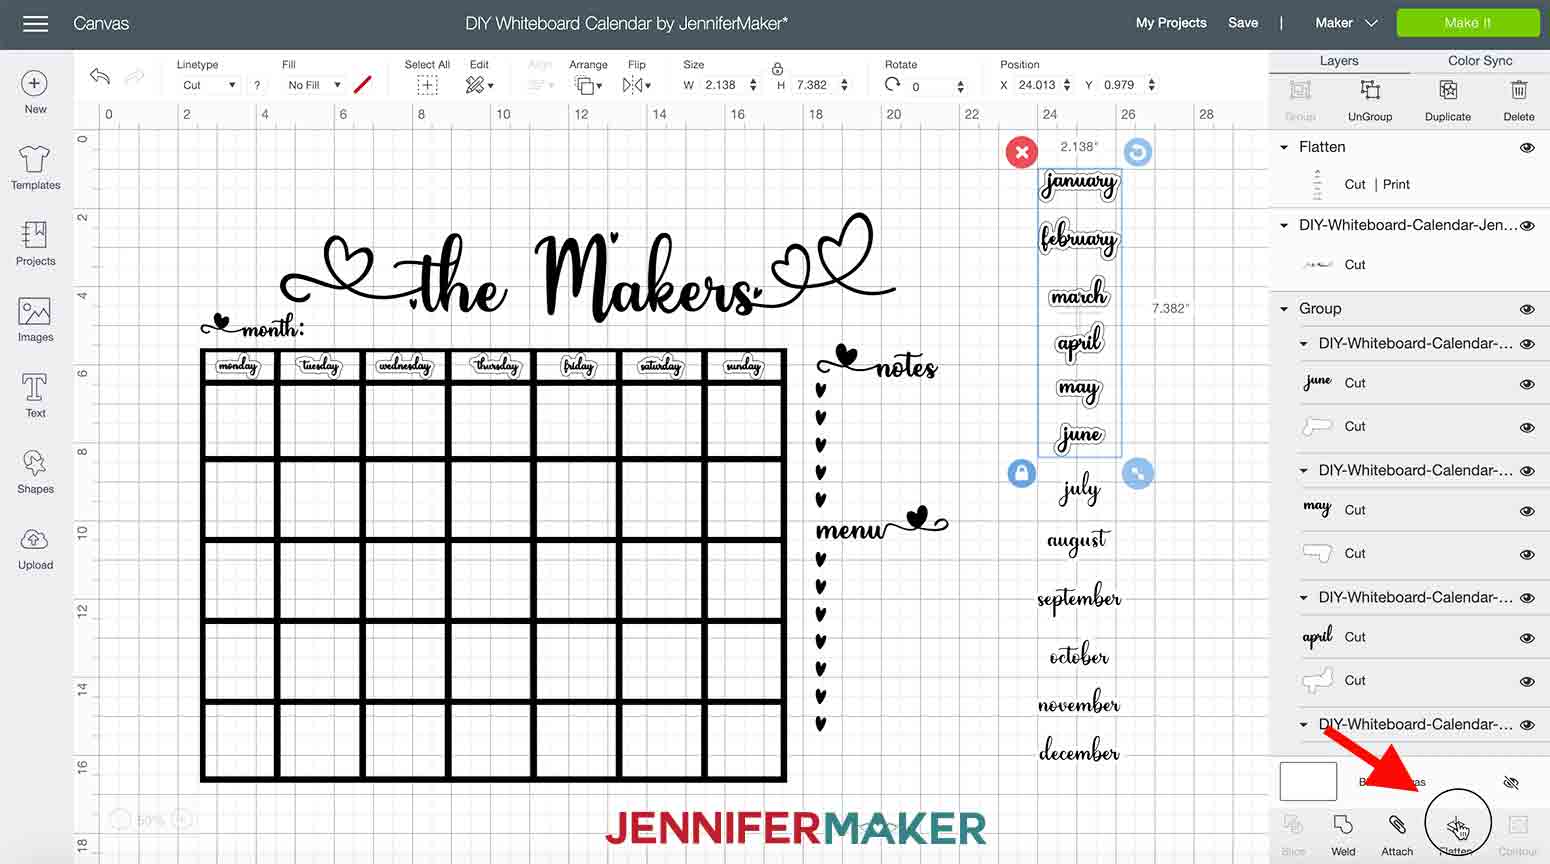 DIY-Whiteboard-Calendar-JenniferMaker-flattengroup-two